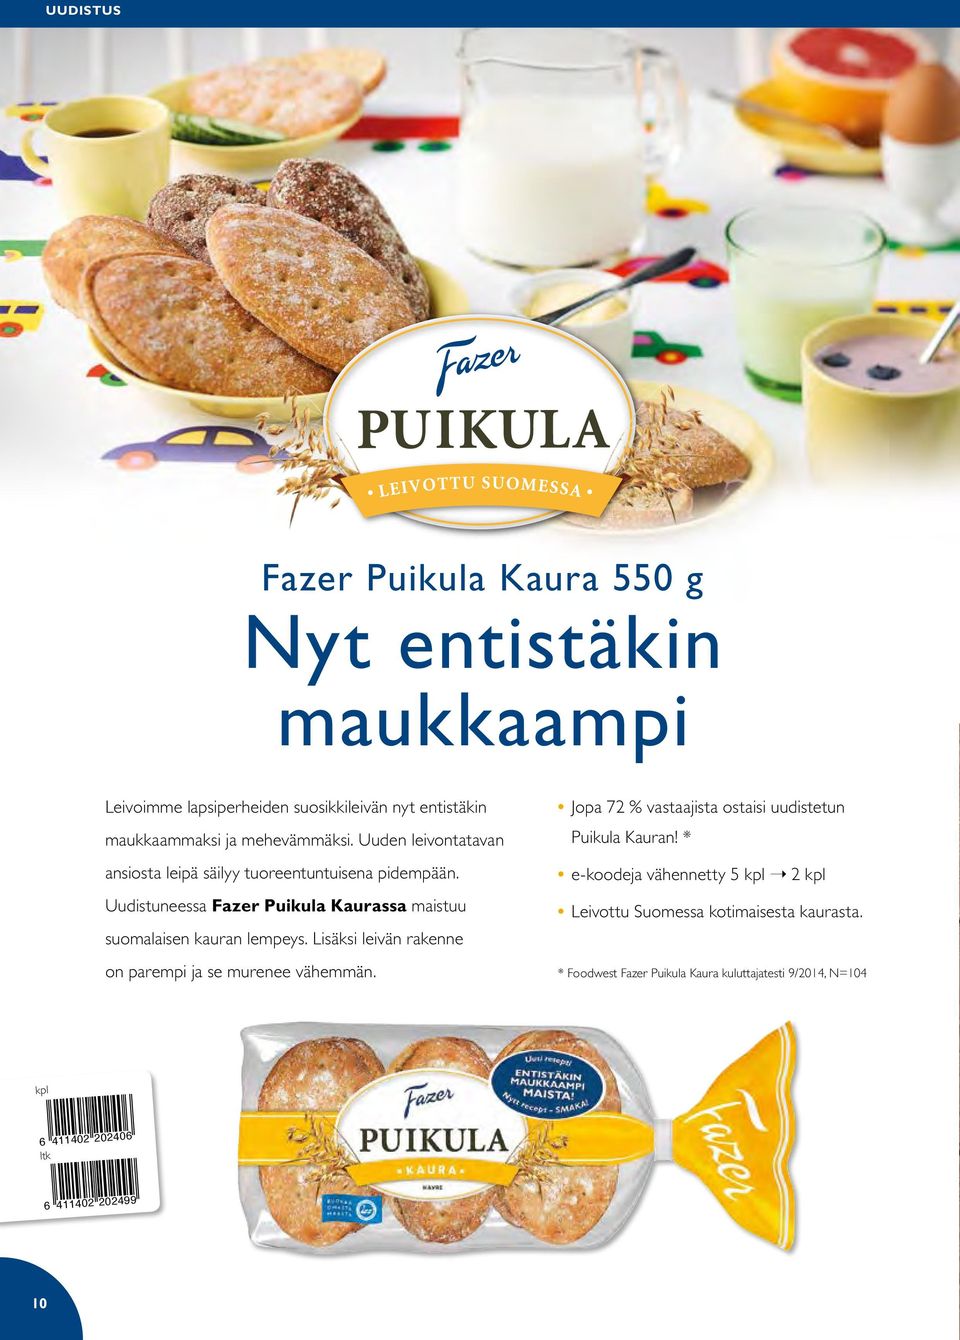 Uudistuneessa Fazer Puikula Kaurassa maistuu suomalaisen kauran lempeys. Lisäksi leivän rakenne on parempi ja se murenee vähemmän.